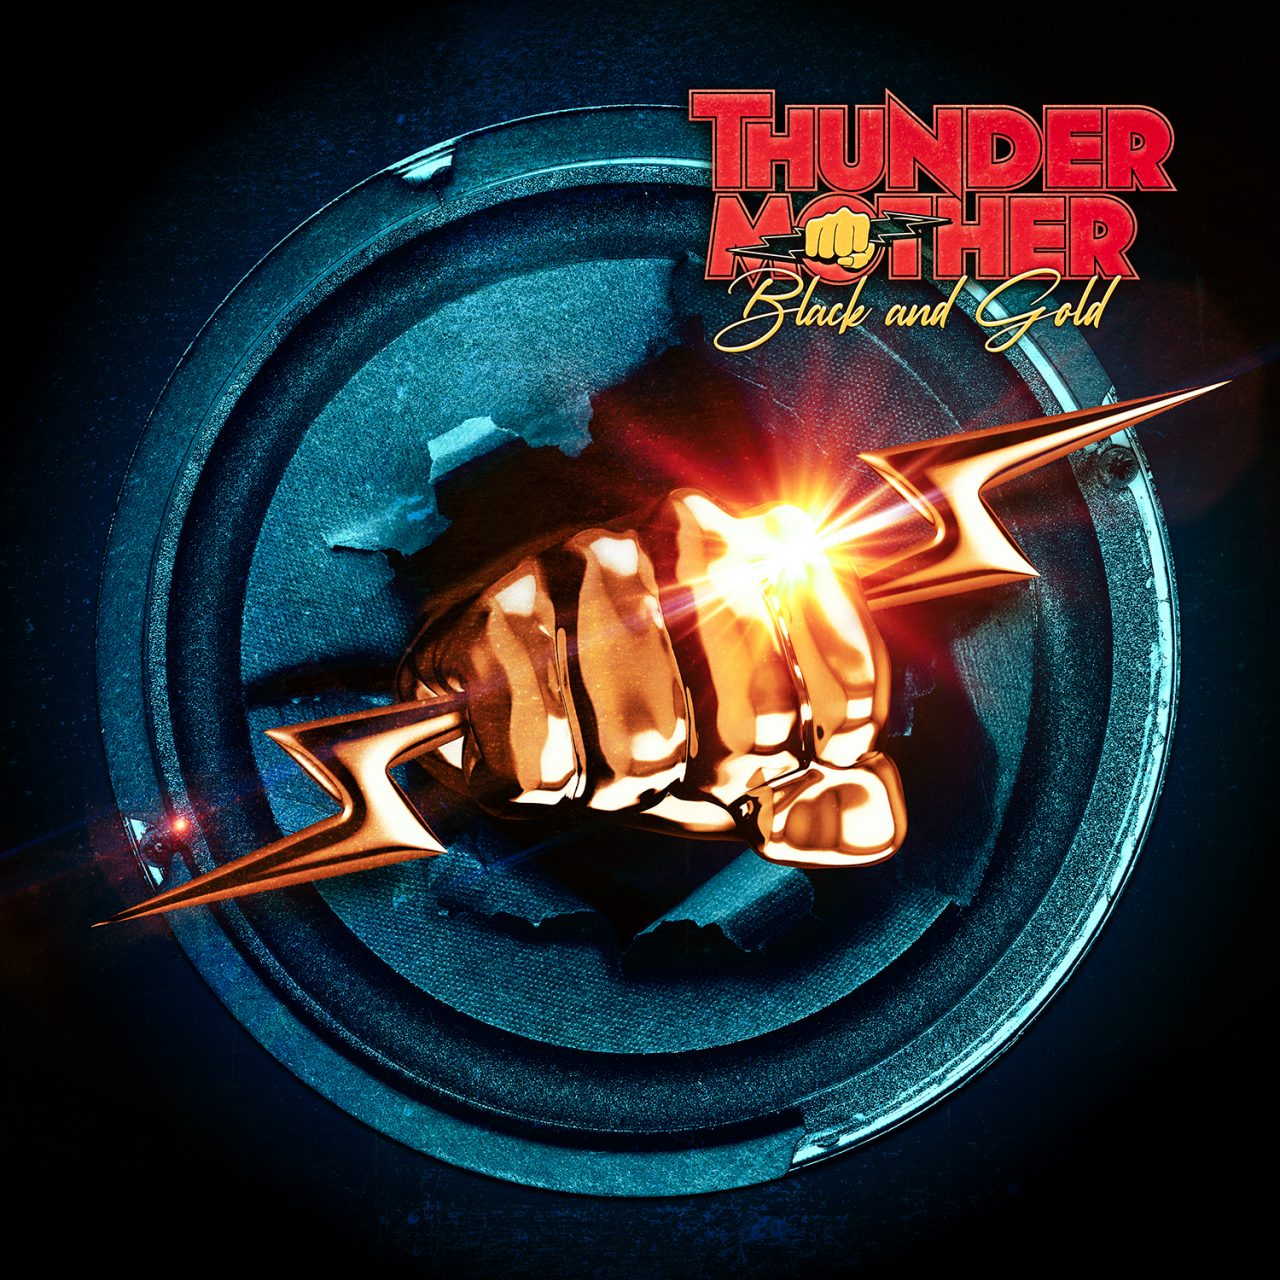 Das Albumcover "Black And Gold" von Thundermother zeigt eine goldene Faust, die einen Blitz umschließt und durch einen Lautsprecher schlägt.